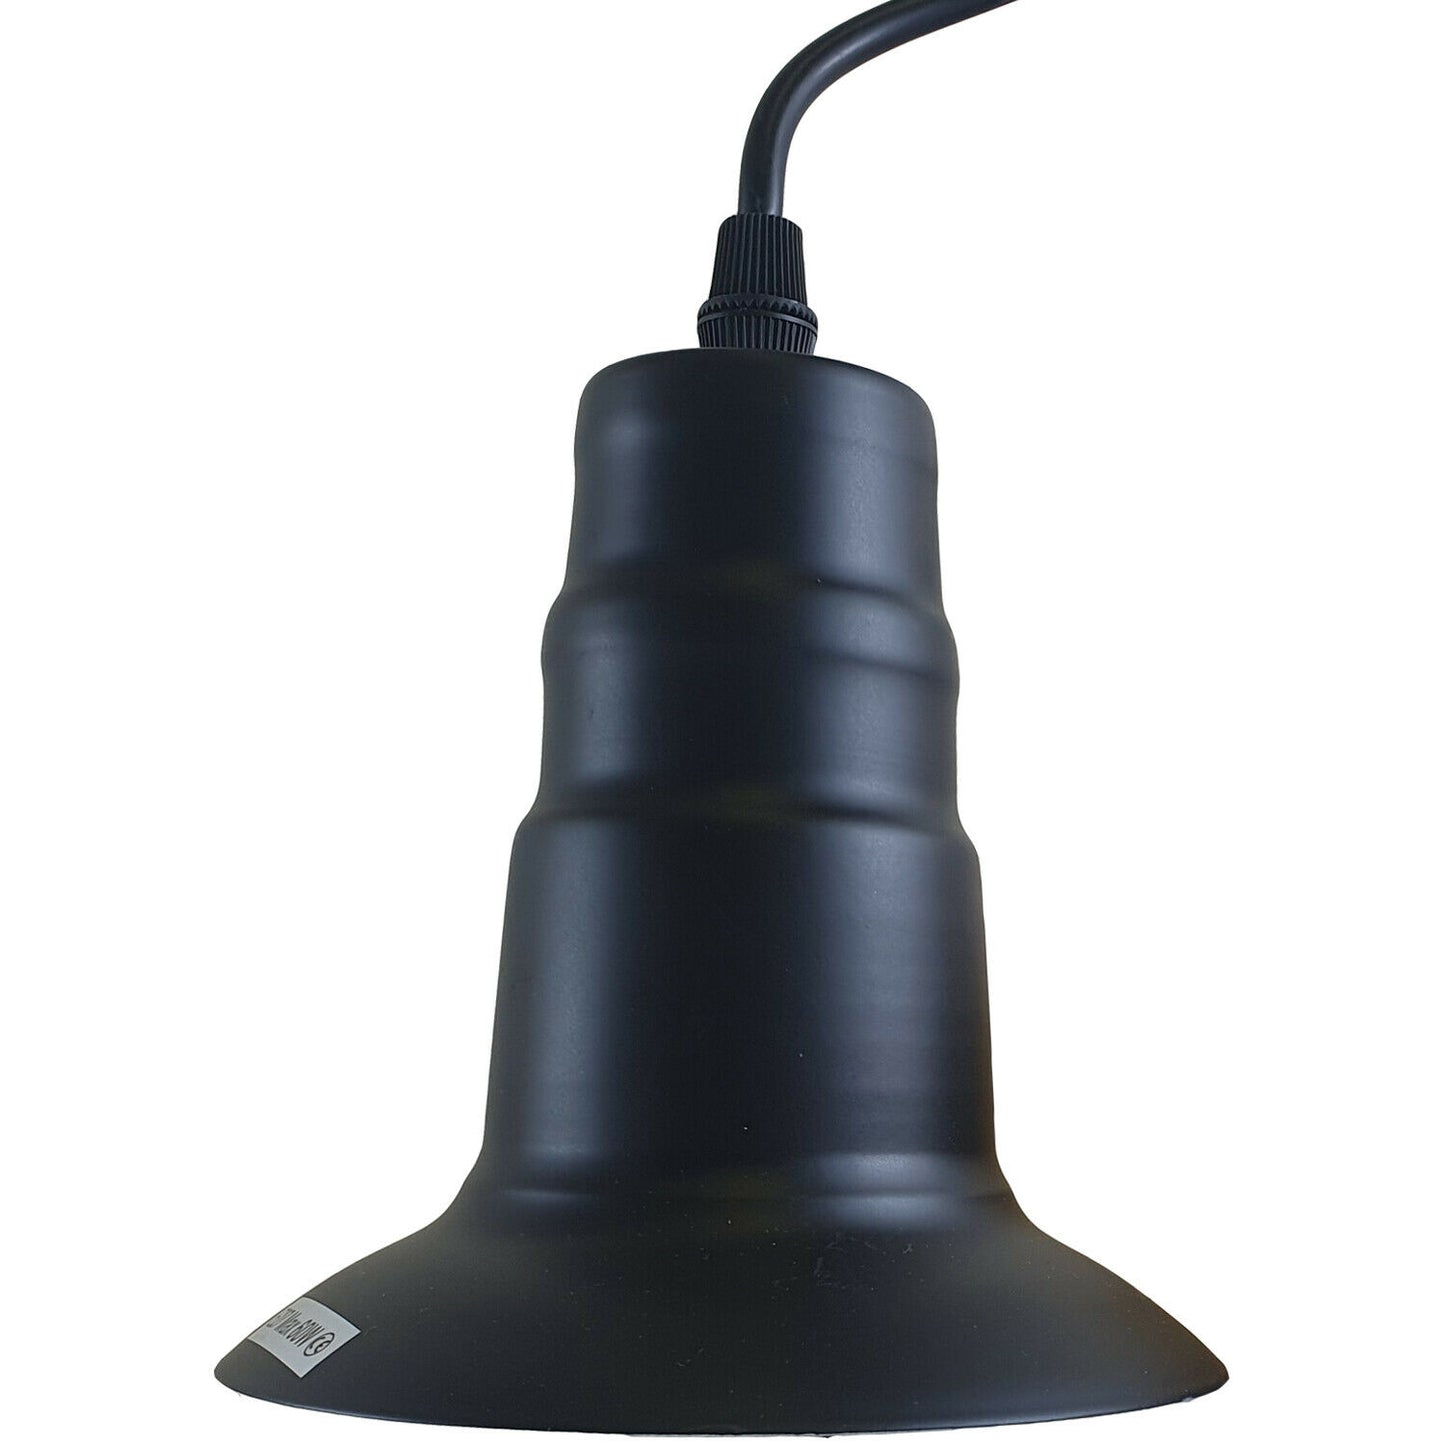 Black Industrial Ceiling E27 Base Fitting Lamp Holder Pendant